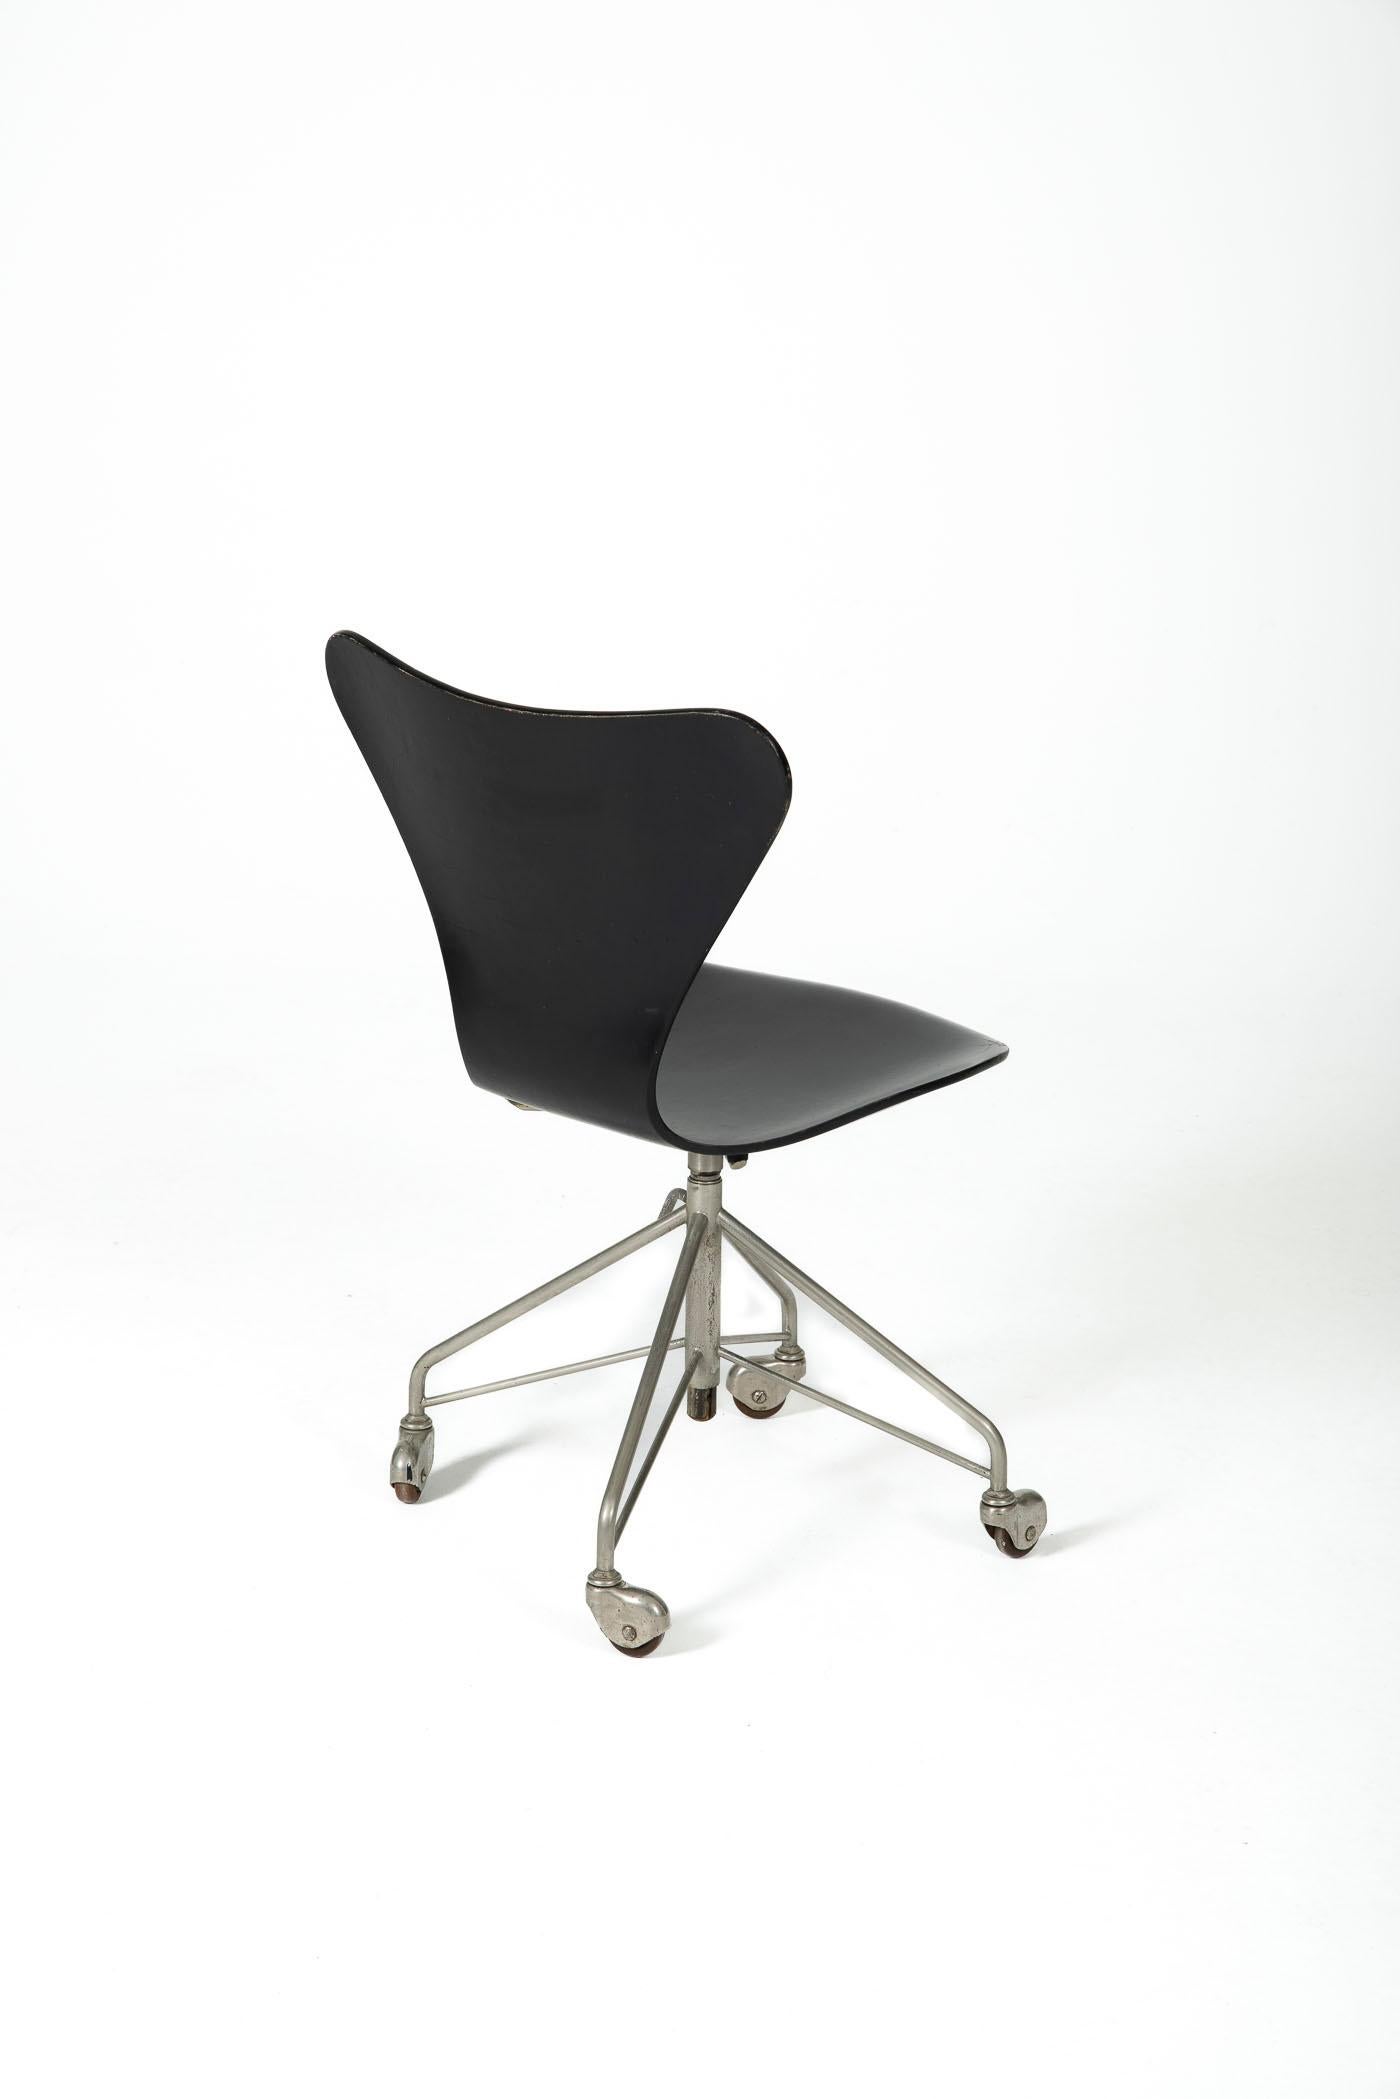 Mid-20th Century Office Chair 3117 by Arne Jacobsen for Fritz Hansen, Denmark, 1960s For Sale